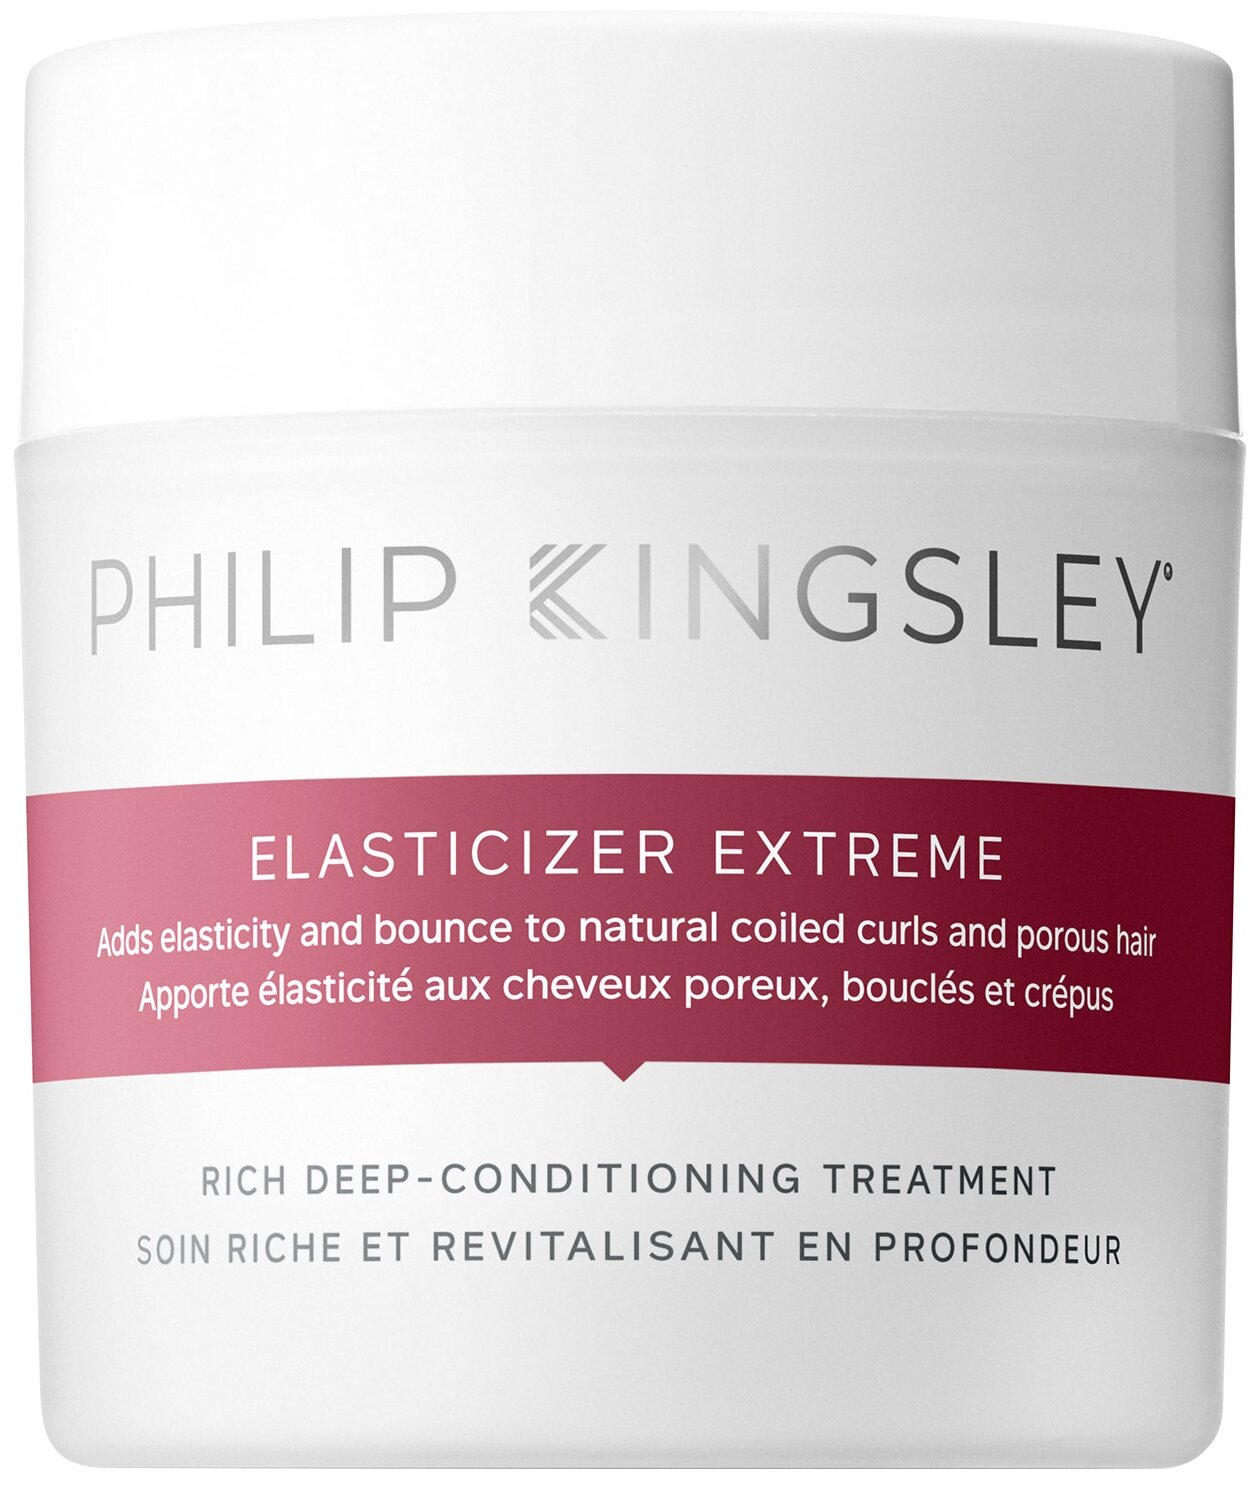 Philip Kingsley Супер увлажняющая маска для волос Elasticizer Extreme, 150 мл, банка — купить в интернет-магазине по низкой цене на Яндекс Маркете